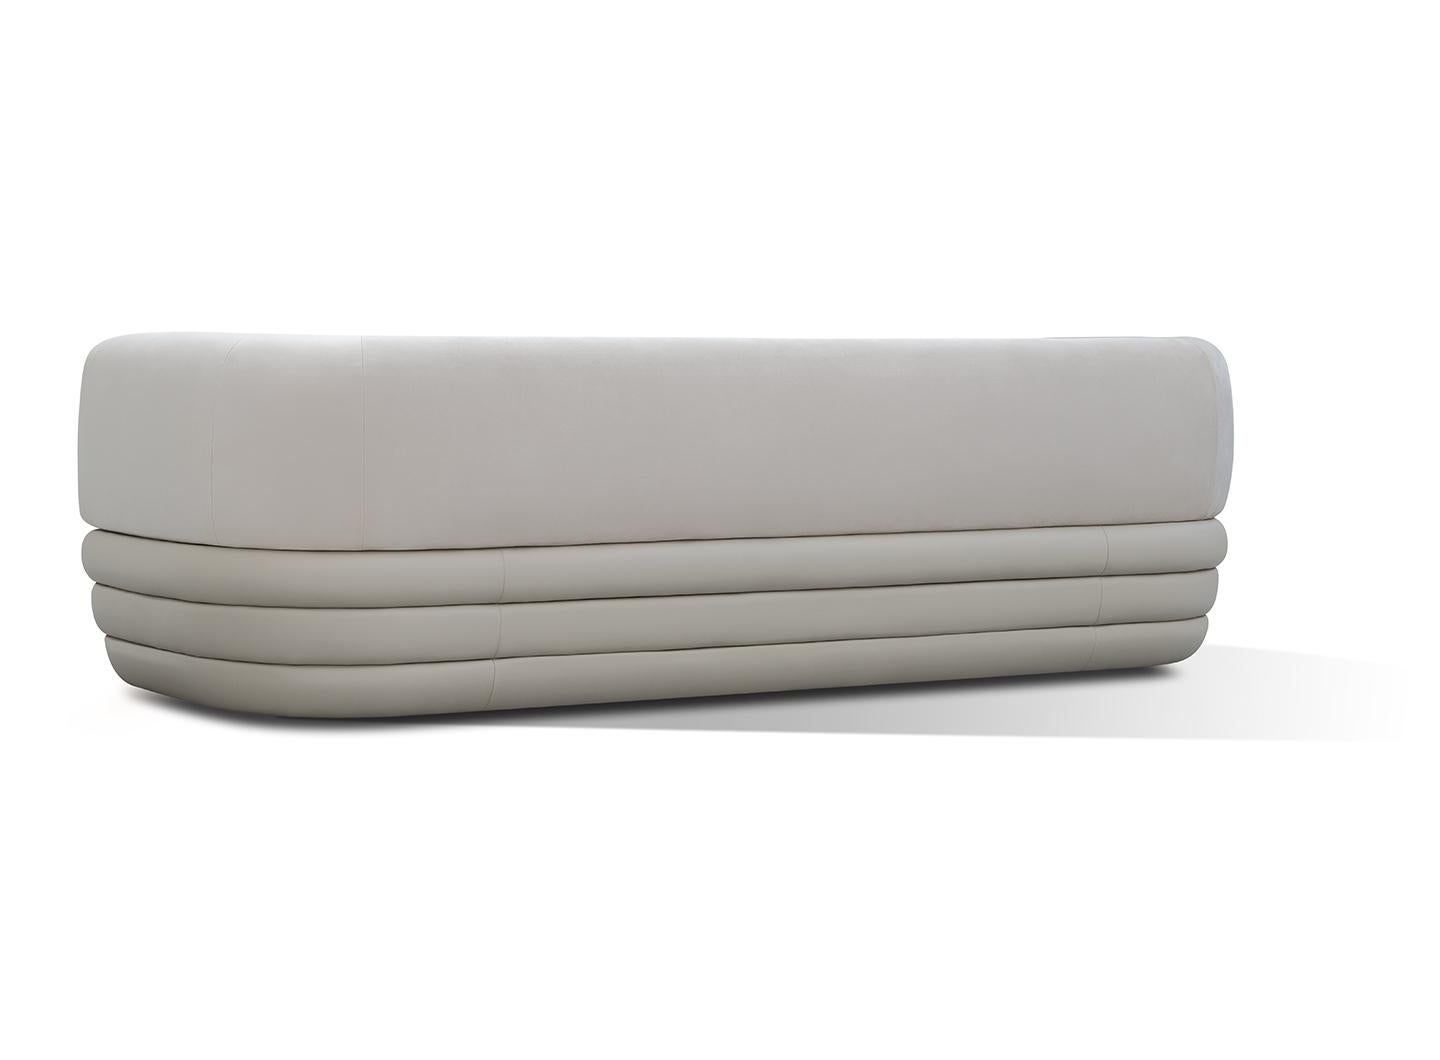 Das Dreisitzer-Sofa zeichnet sich durch eine weiche, perfekt geformte Rückenlehne aus, die Sie umarmt und den Komfort erhöht.
Die Basis wird durch drei separate Teile bereichert, die um den Sessel herum verlaufen und ihn zu einem einzigartigen